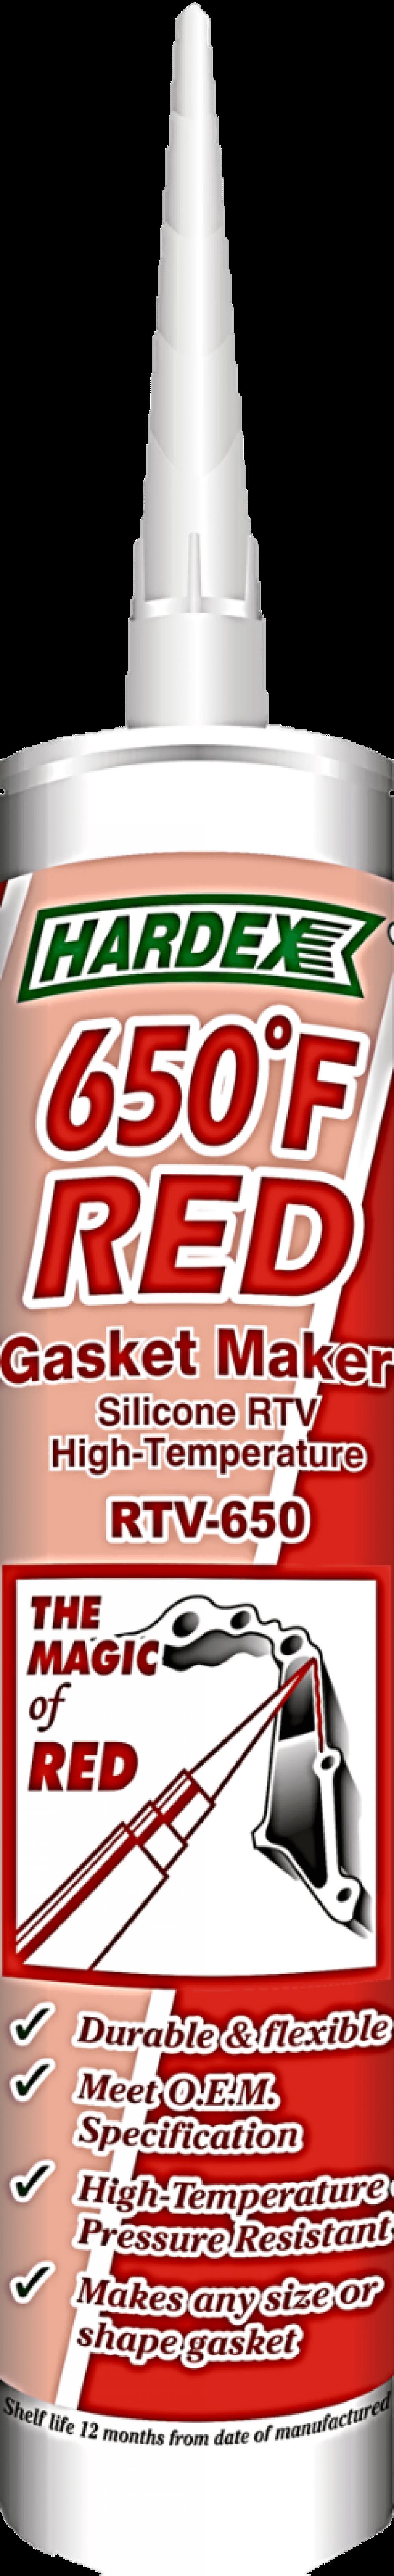 ซิลิโคนปะเก็นเหลว ชนิดสีแดง ทนความร้อน 343C(Hi-Temp Red)>>สินค้าเฉพาะทางสอบถามราคาเพิ่มเติม ไอซ์0918157073<<